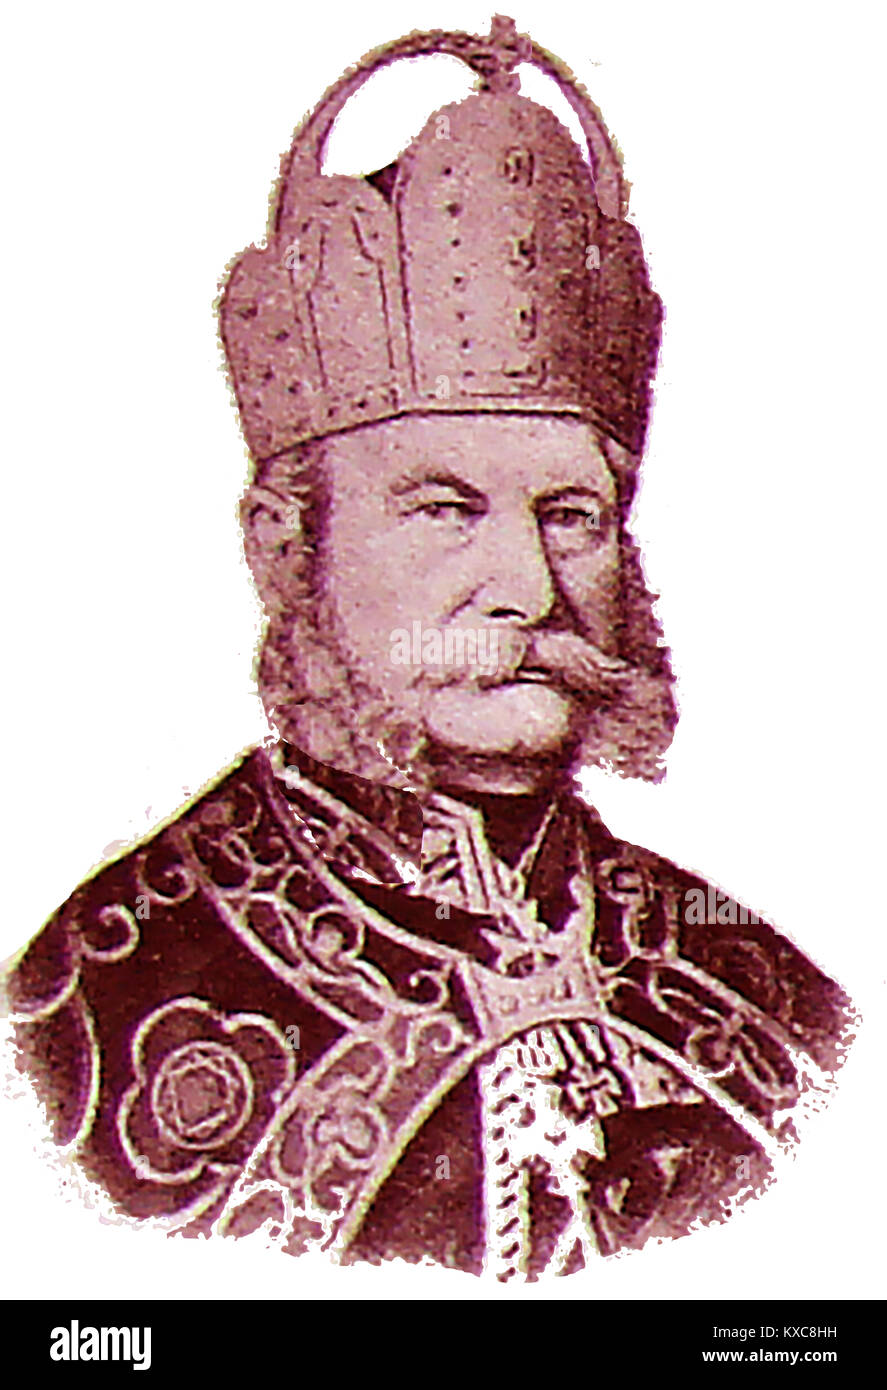 William I, (Wilhelm I) Louis , de la maison de Hohenzollern (1797-1888) - roi de Prusse et le premier empereur allemand (titulaire de l'Bundespräsidium de la Confédération d'Allemagne du Nord) Banque D'Images